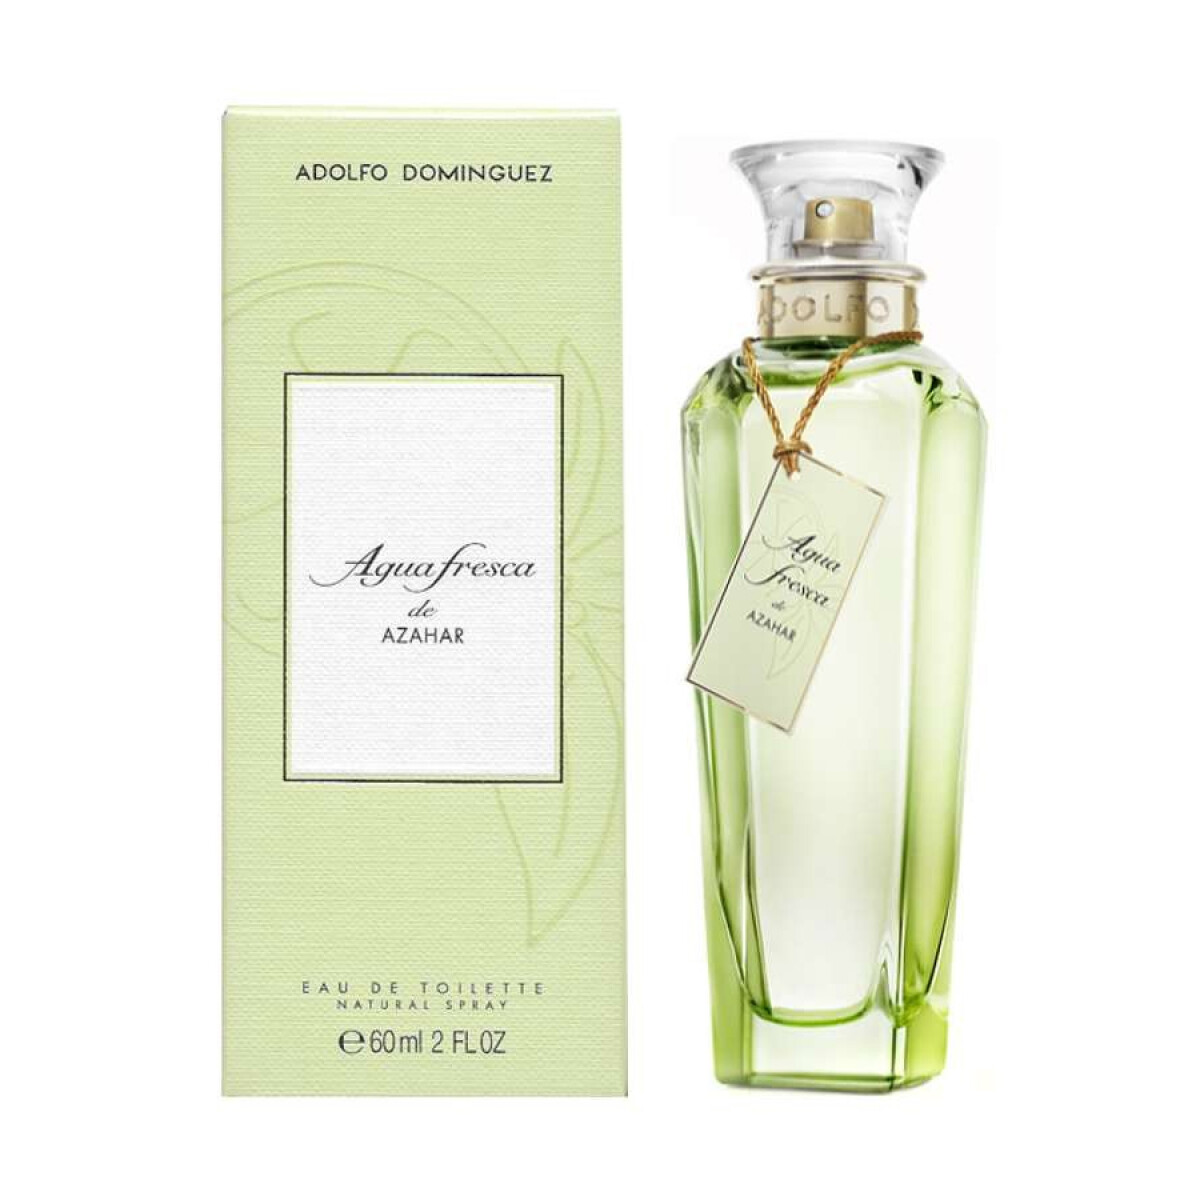 Perfume Mujer Adolfo Dominguez Agua Fresca de Azahar 60ML - 001 